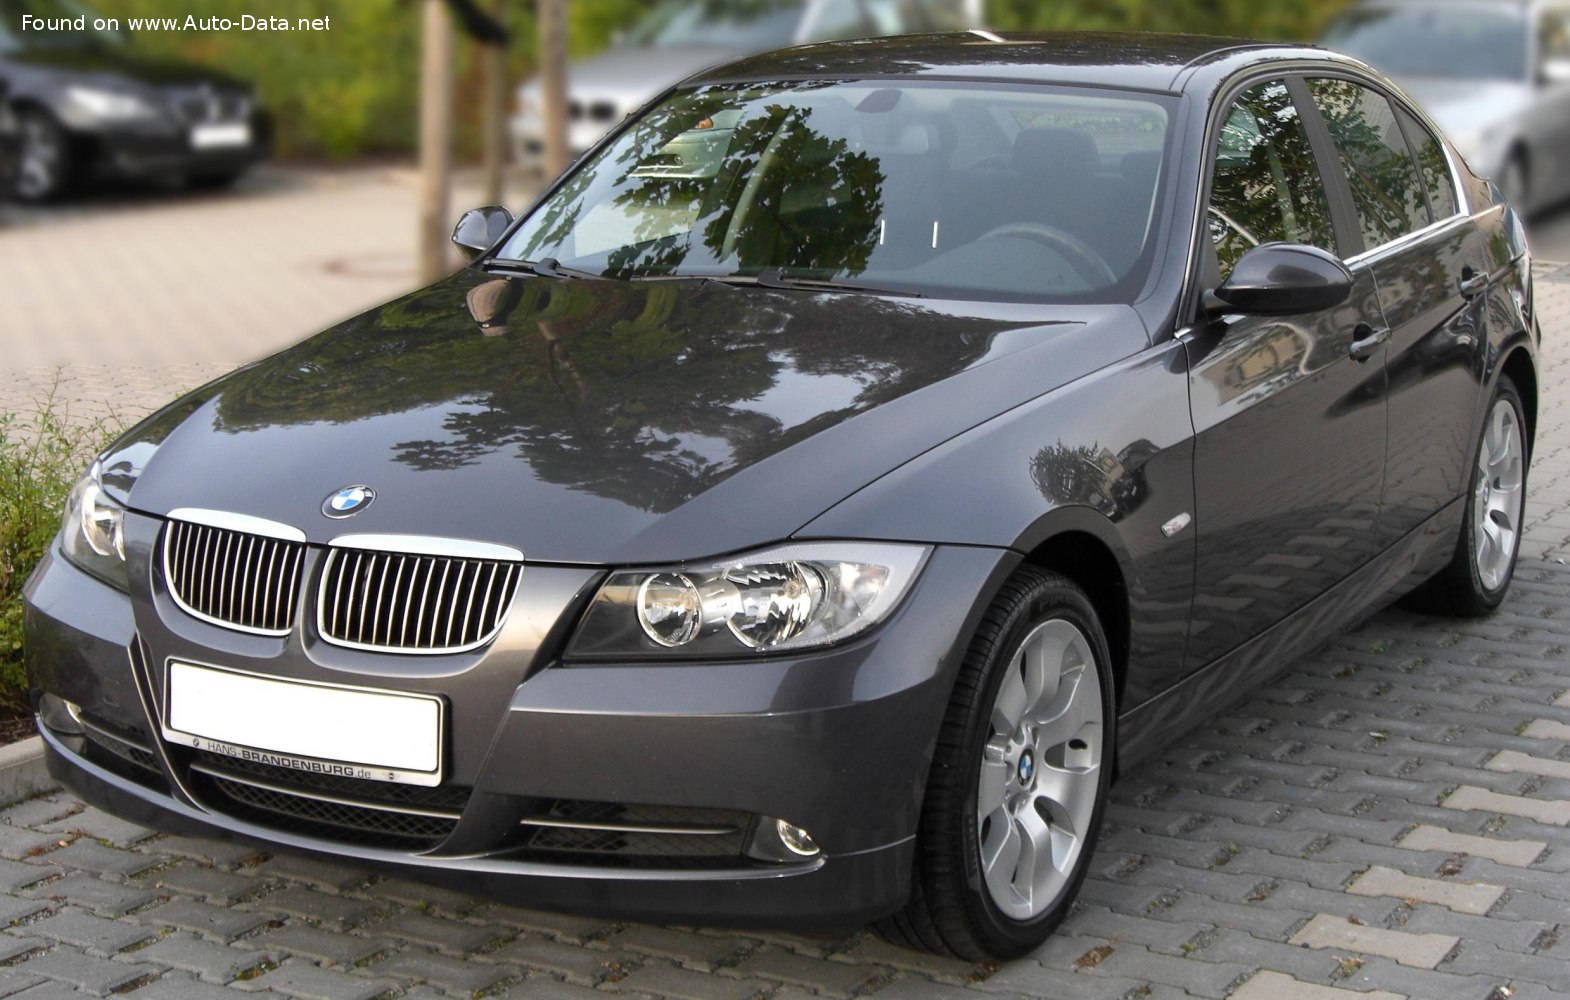 2007 BMW 3 Series Sedan (E90) 335i (306 Hp)  Technical specs, data, fuel  consumption, Dimensions